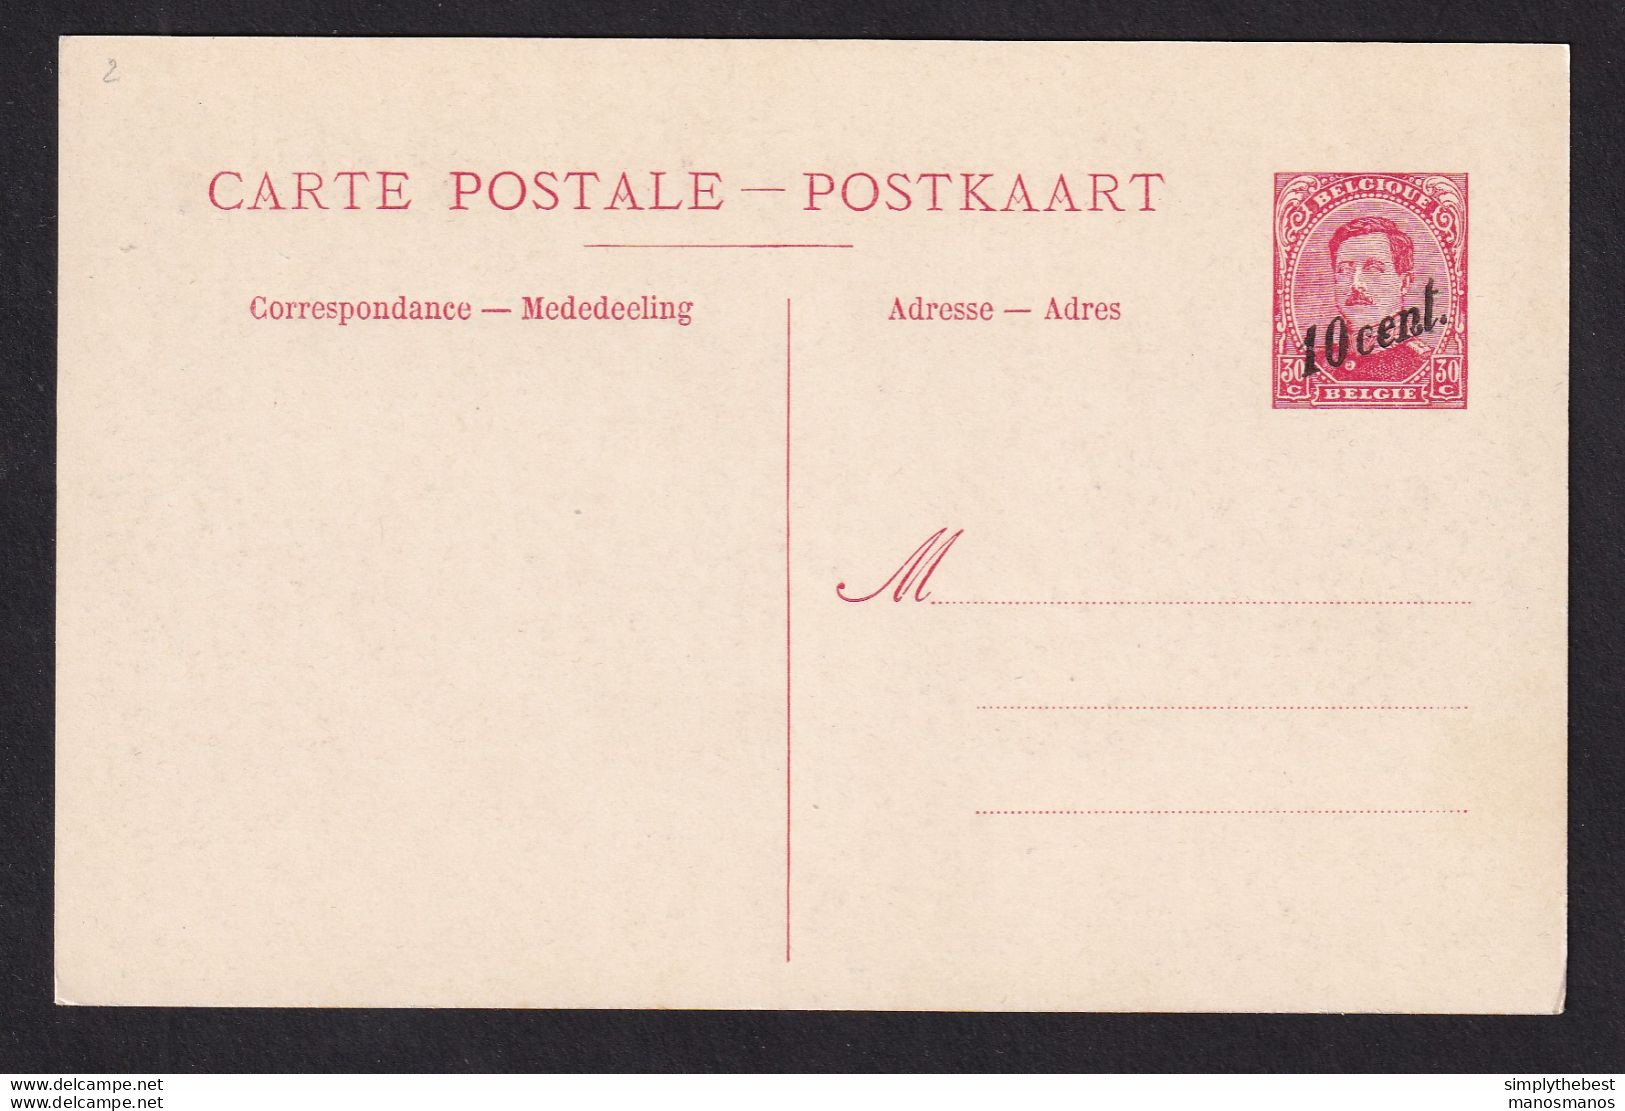 DDBB 437 - Carte Postale Paquebot 19 - 10 Cent. Sur 30 C - Non Utilisée - Liner Cards